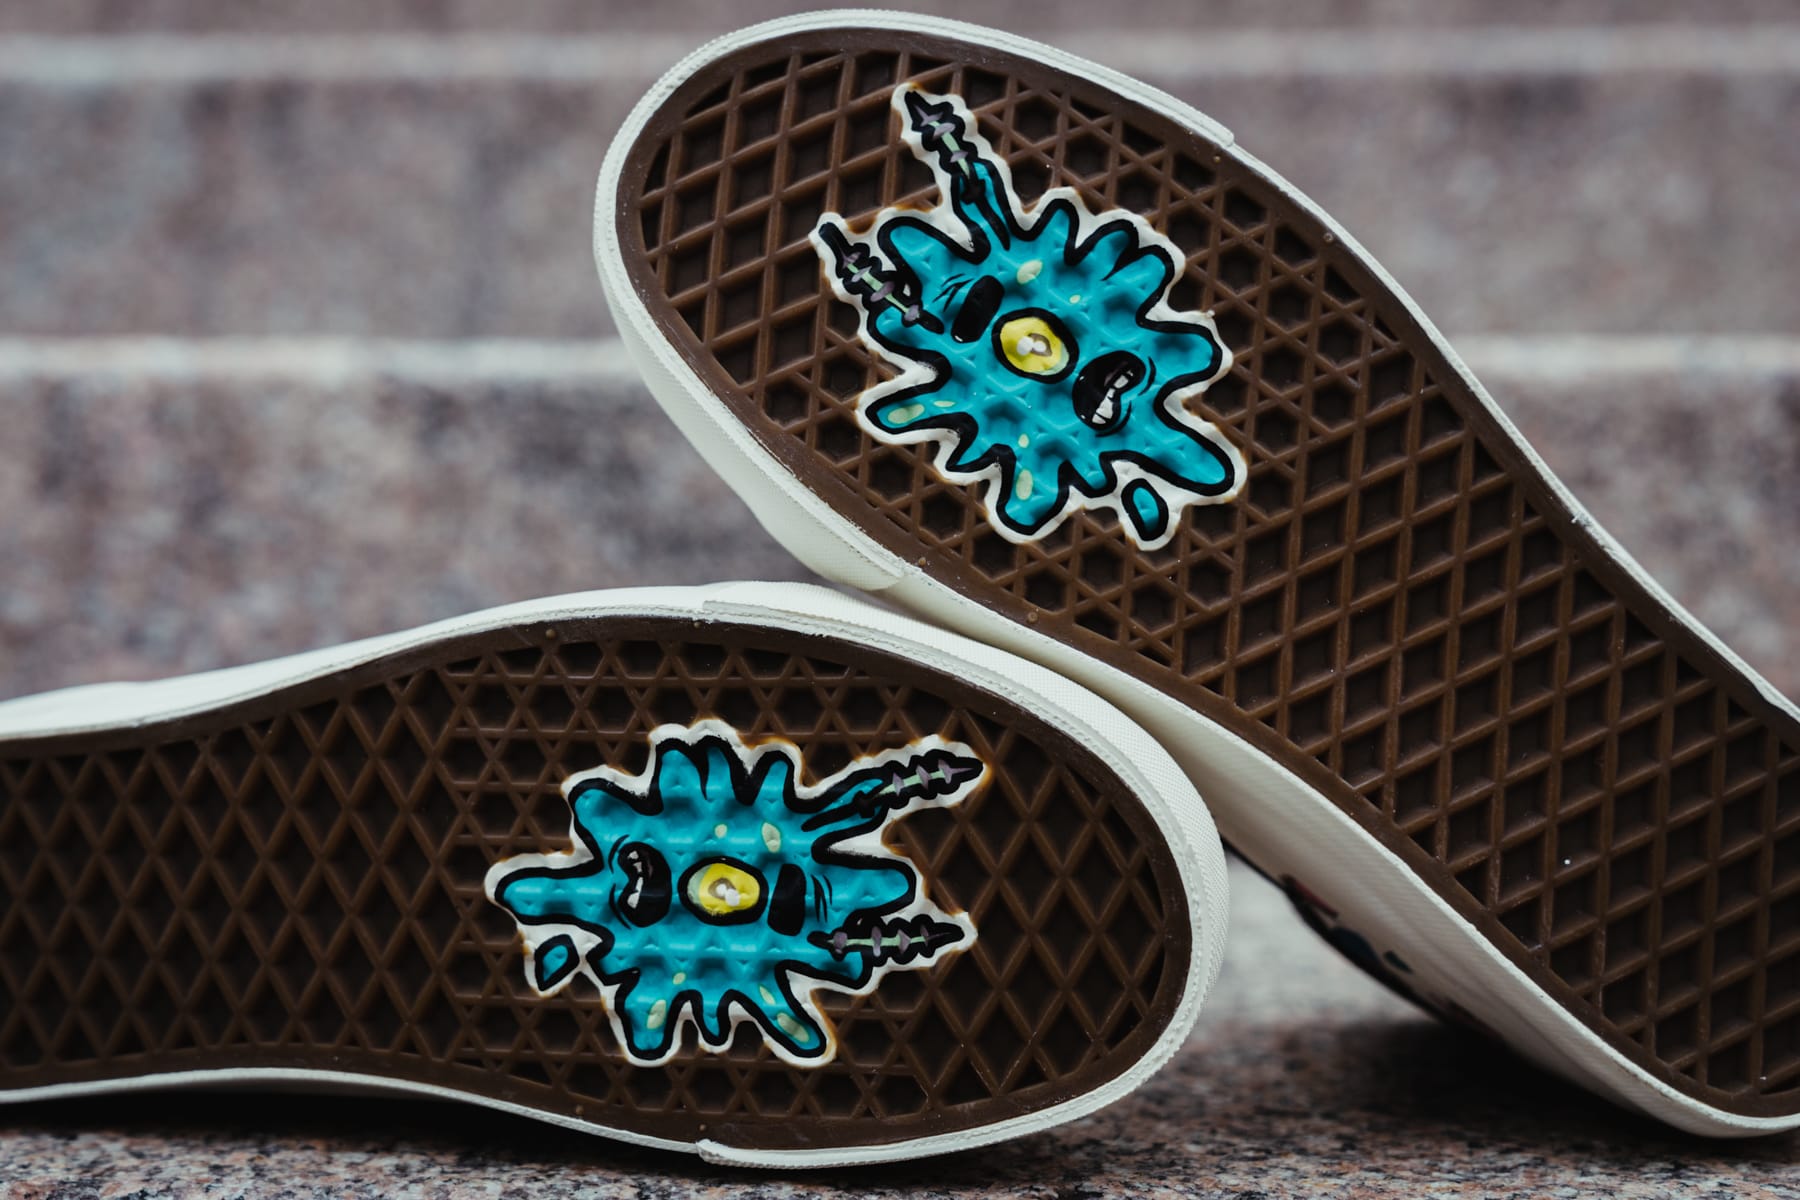 spongebob shoes vans